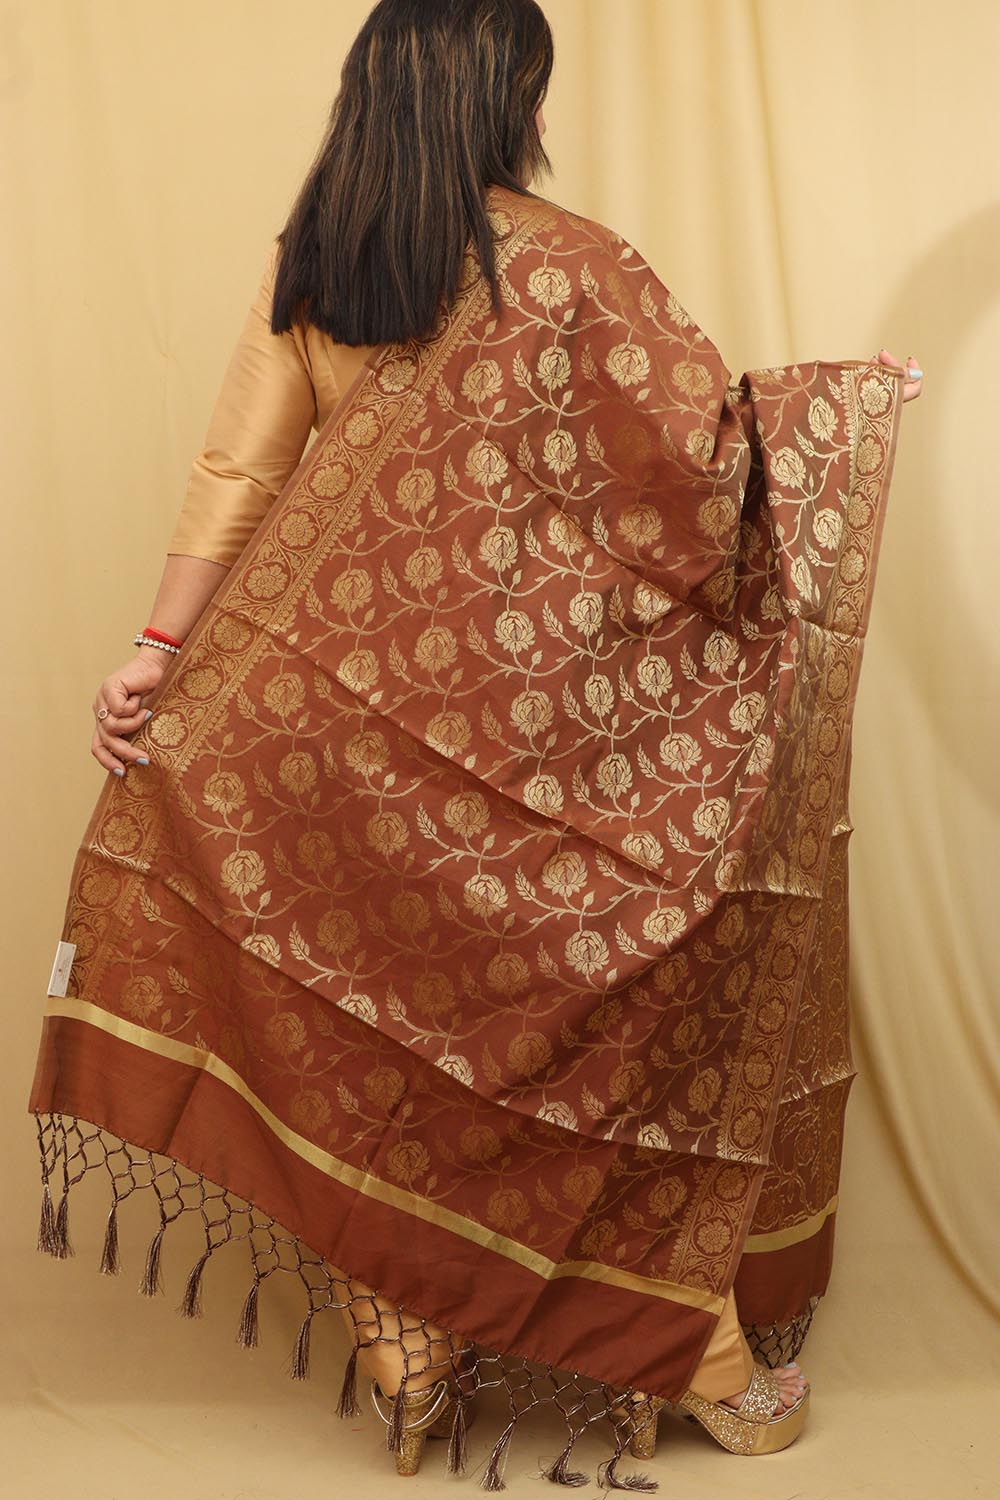 Exquisite Brown Banarasi Silk Dupatta - Timeless Elegance